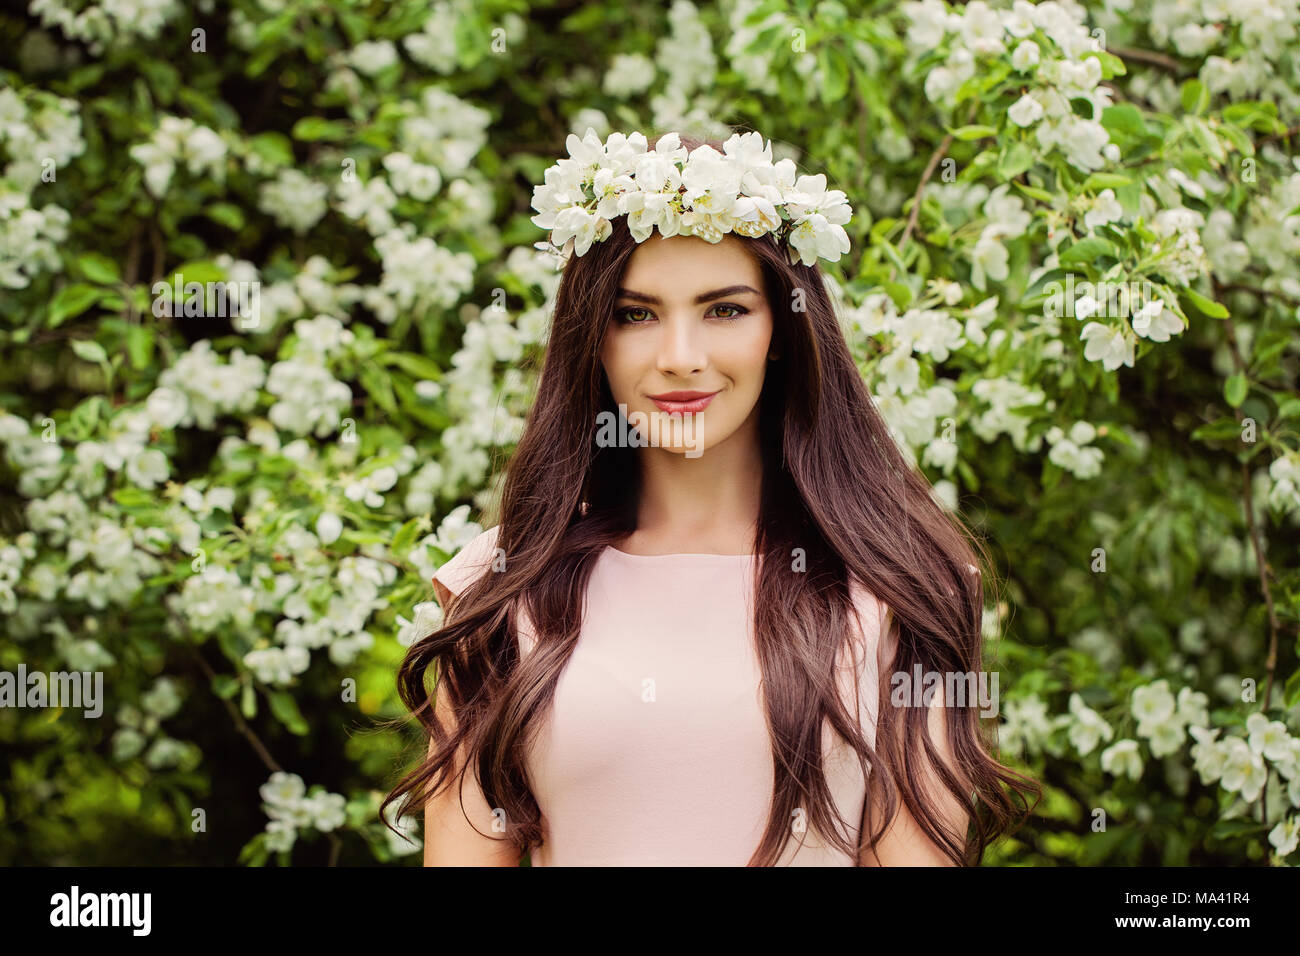 Junge lächelnde Frau mit Blumen Kranz. Nettes Mädchen mit Make-up, Blumen und lange glatte Haare auf floral background im Freien Stockfoto